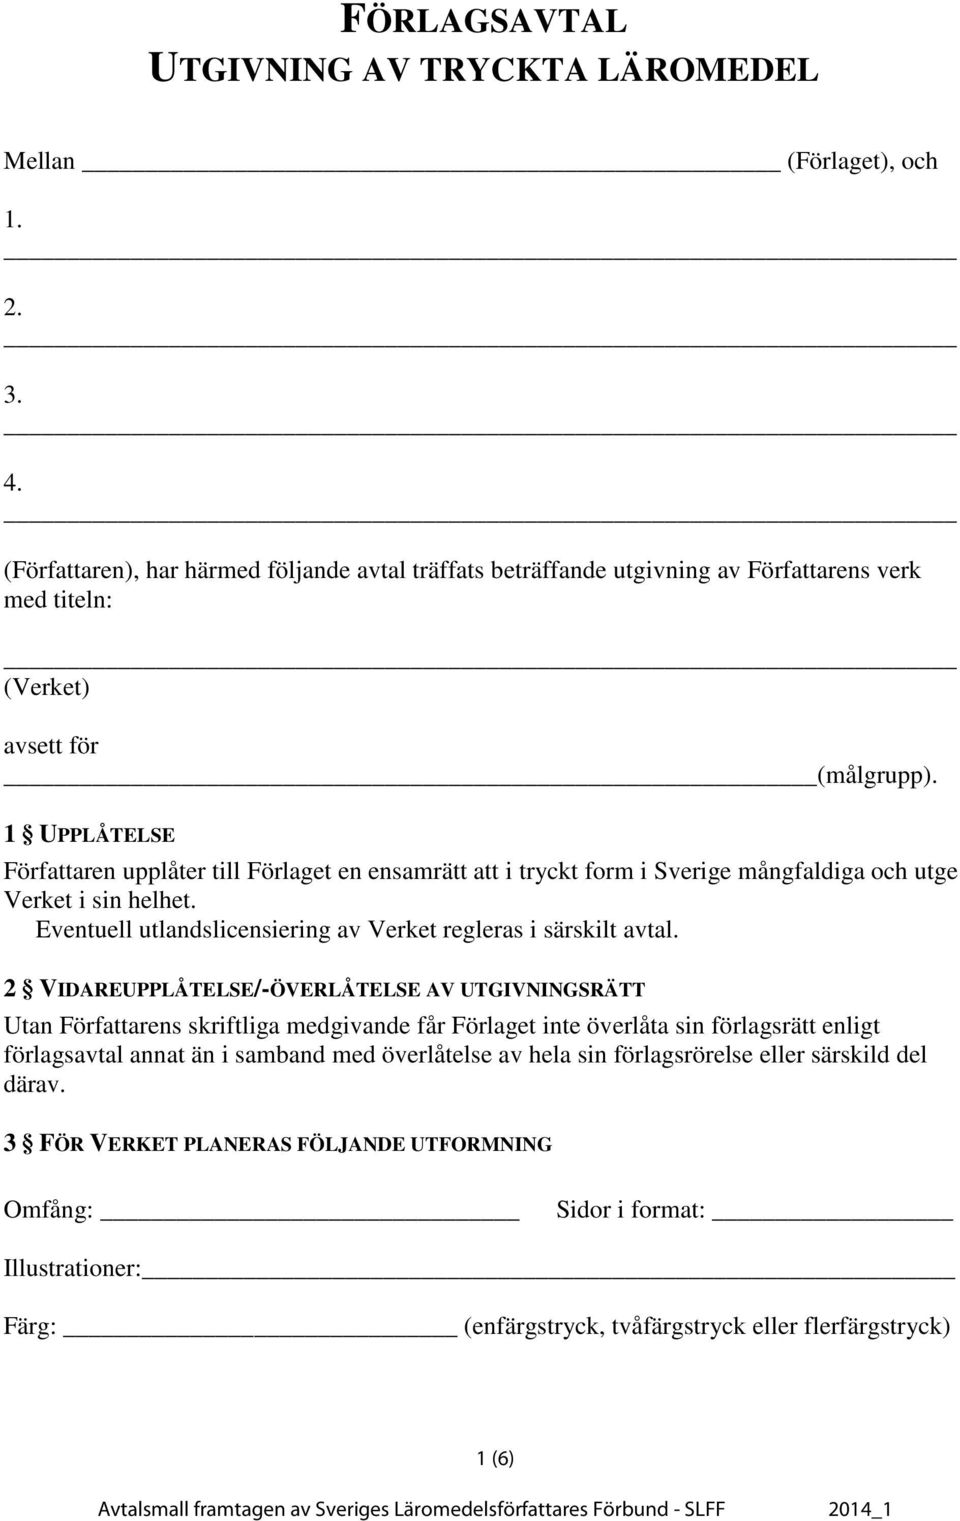 1 UPPLÅTELSE n upplåter till Förlaget en ensamrätt att i tryckt form i Sverige mångfaldiga och utge Verket i sin helhet. Eventuell utlandslicensiering av Verket regleras i särskilt avtal.